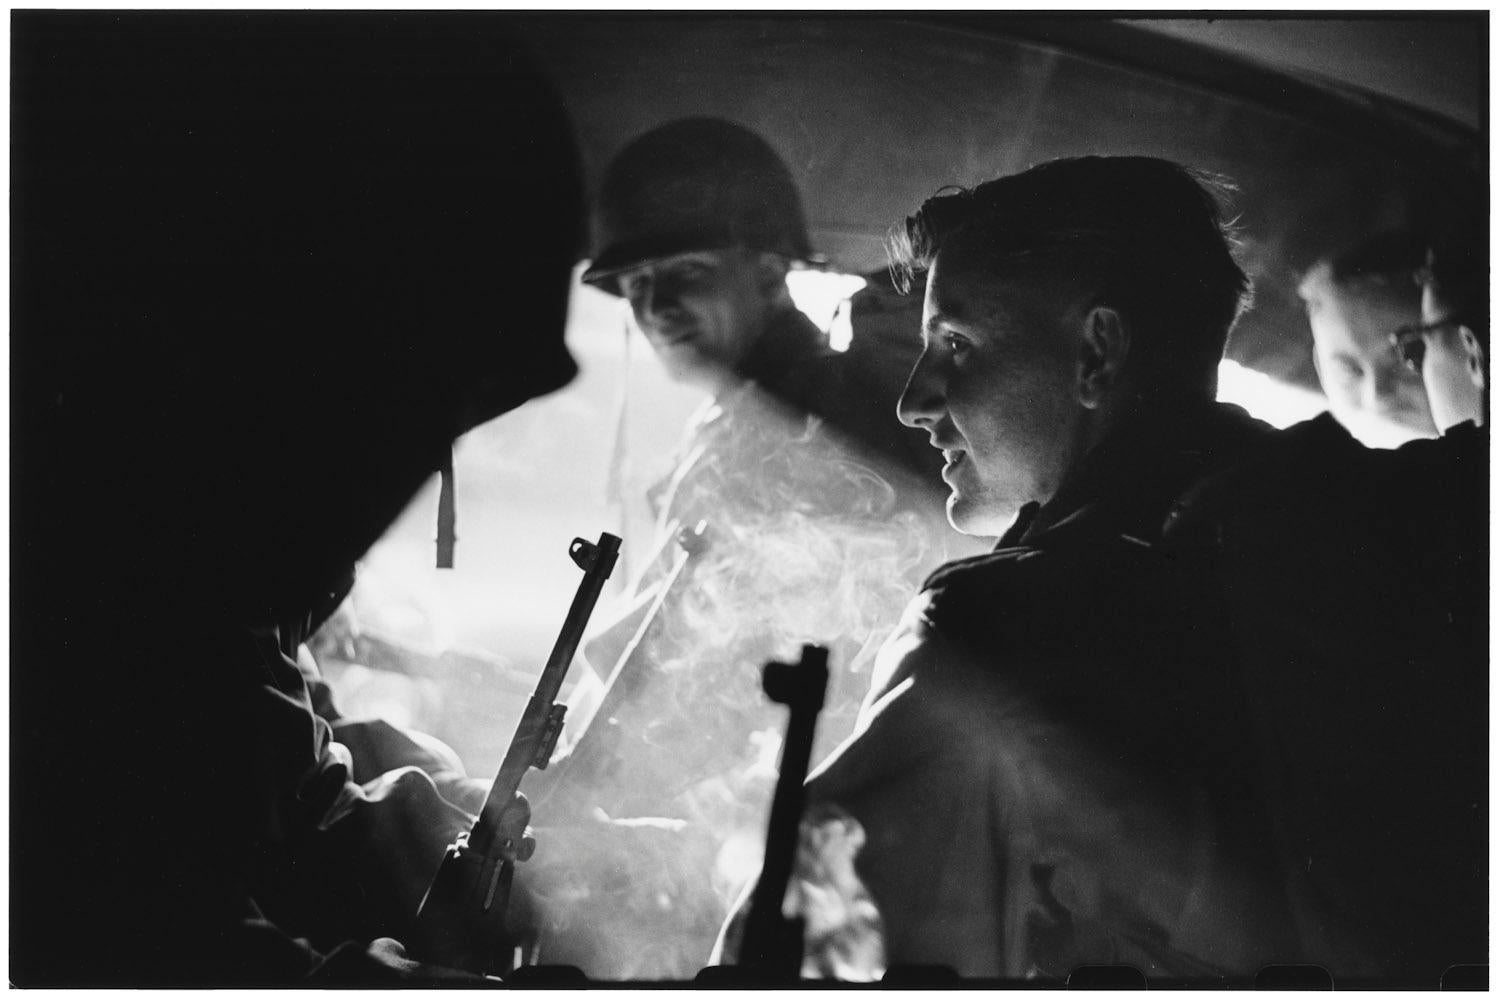 États-Unis, Fort Dix, New Jersey, 1951 - Elliott Erwitt (Photographie en noir et blanc)
Signé, inscrit avec le titre et daté sur l'étiquette de l'artiste qui l'accompagne
Tirage à la gélatine argentique, imprimé ultérieurement

Disponible en quatre